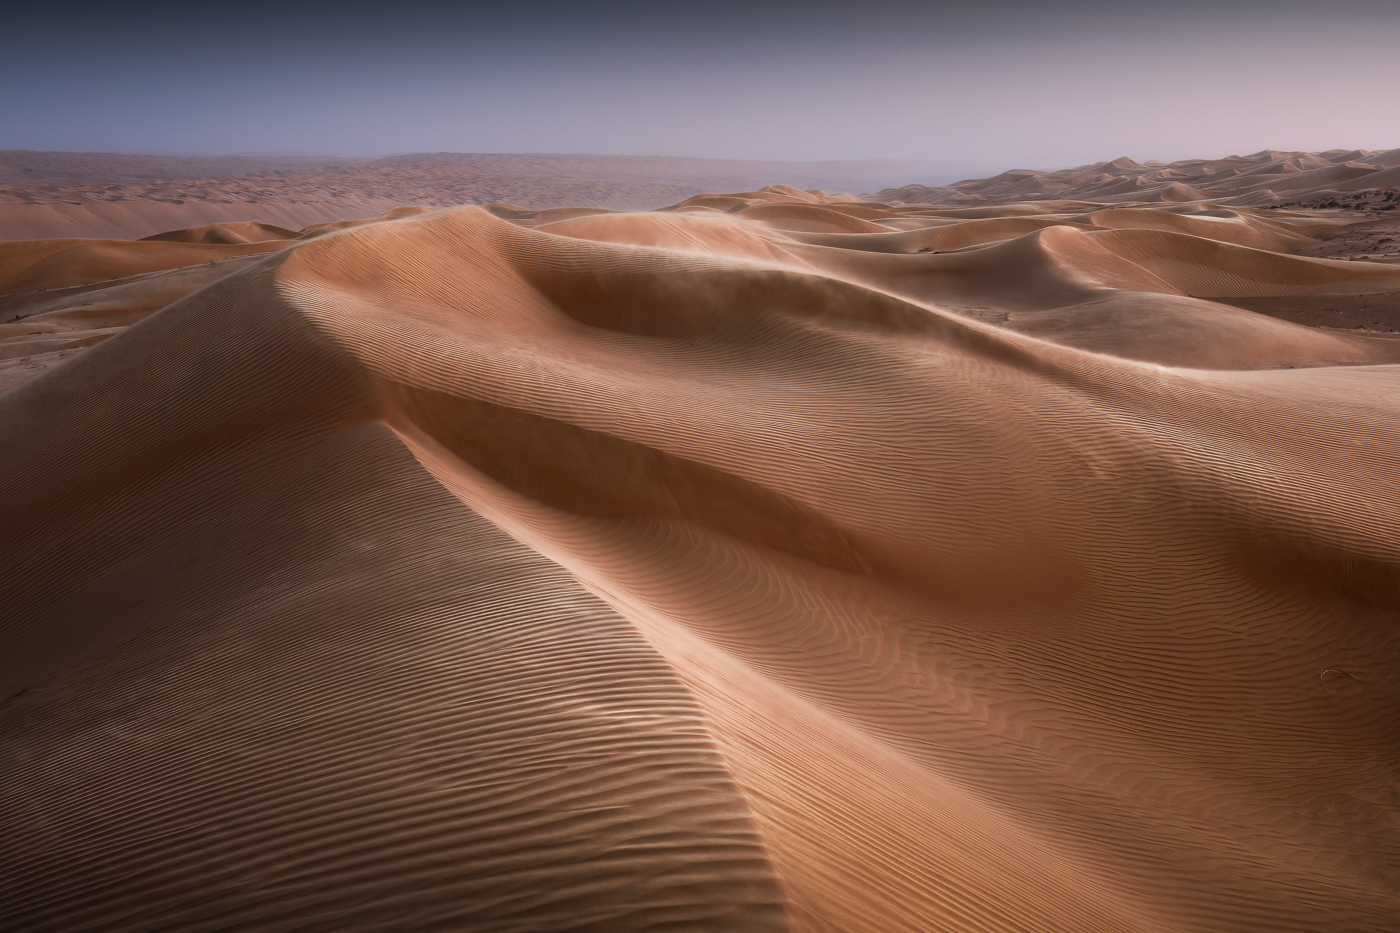 Al tramonto, un vento intenso spazza le creste delle dune, plasmandole, in un moto perpetuo. Oman.